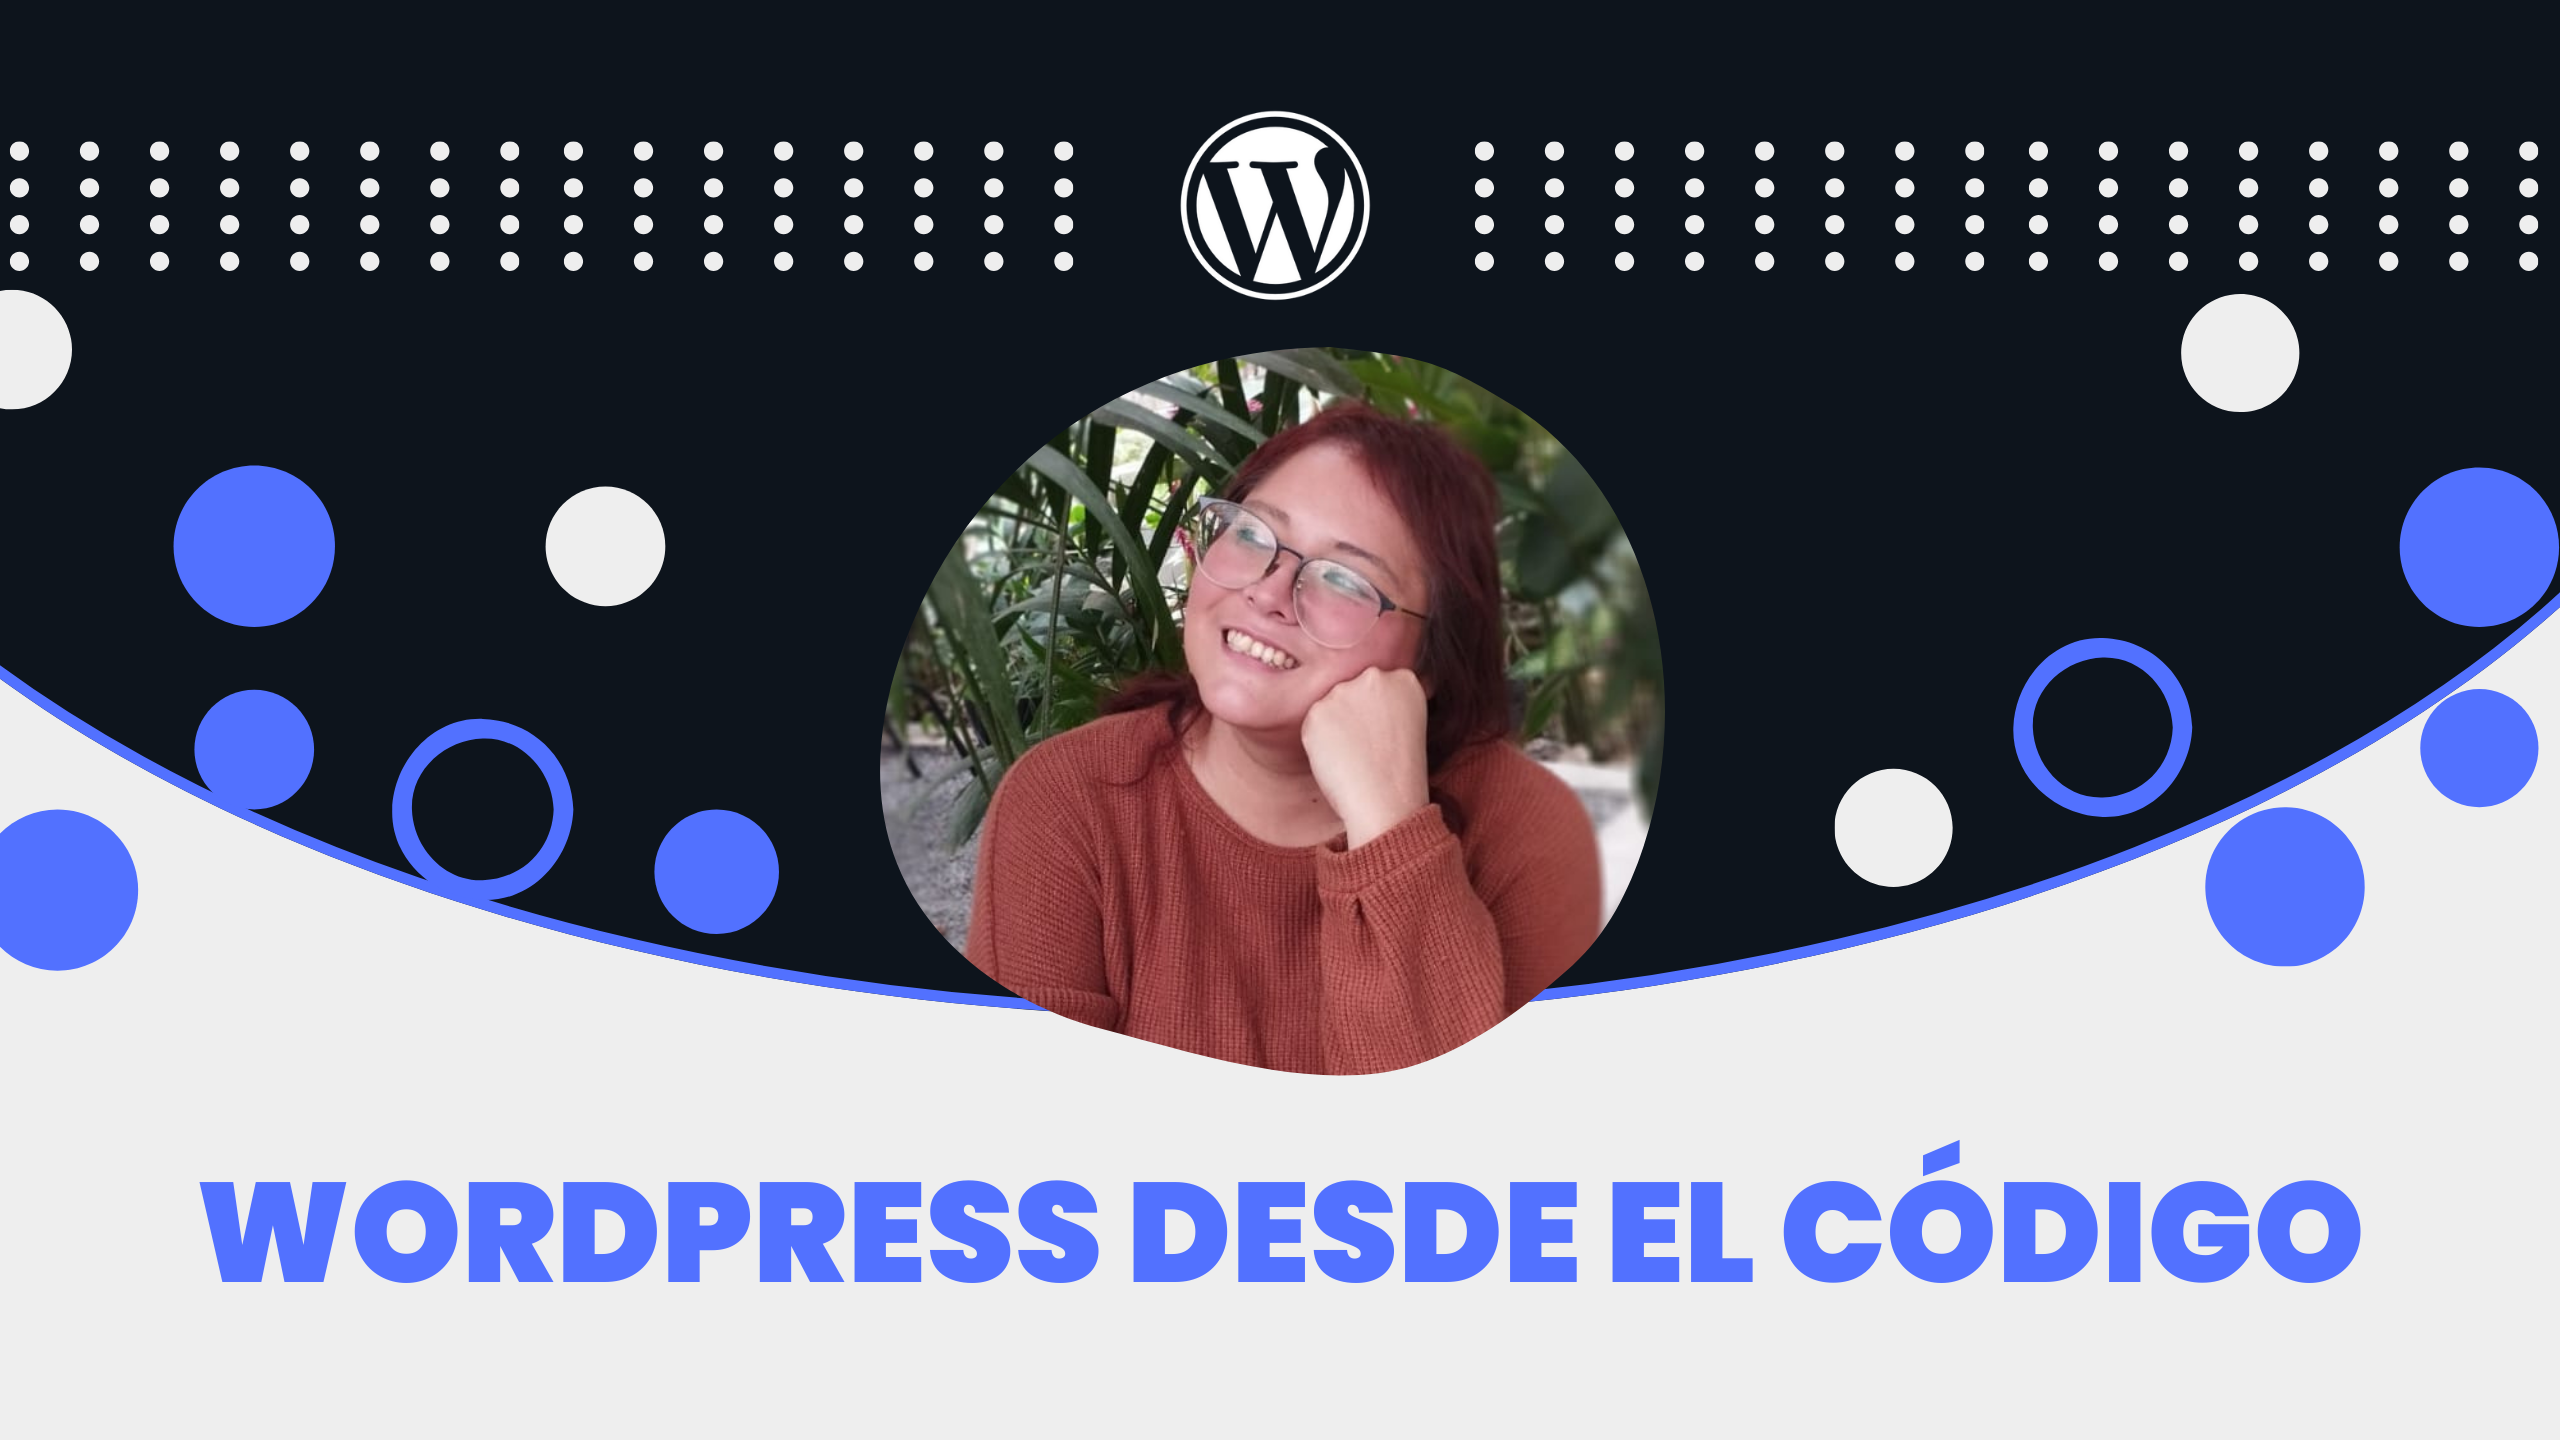 WordPress desde el código